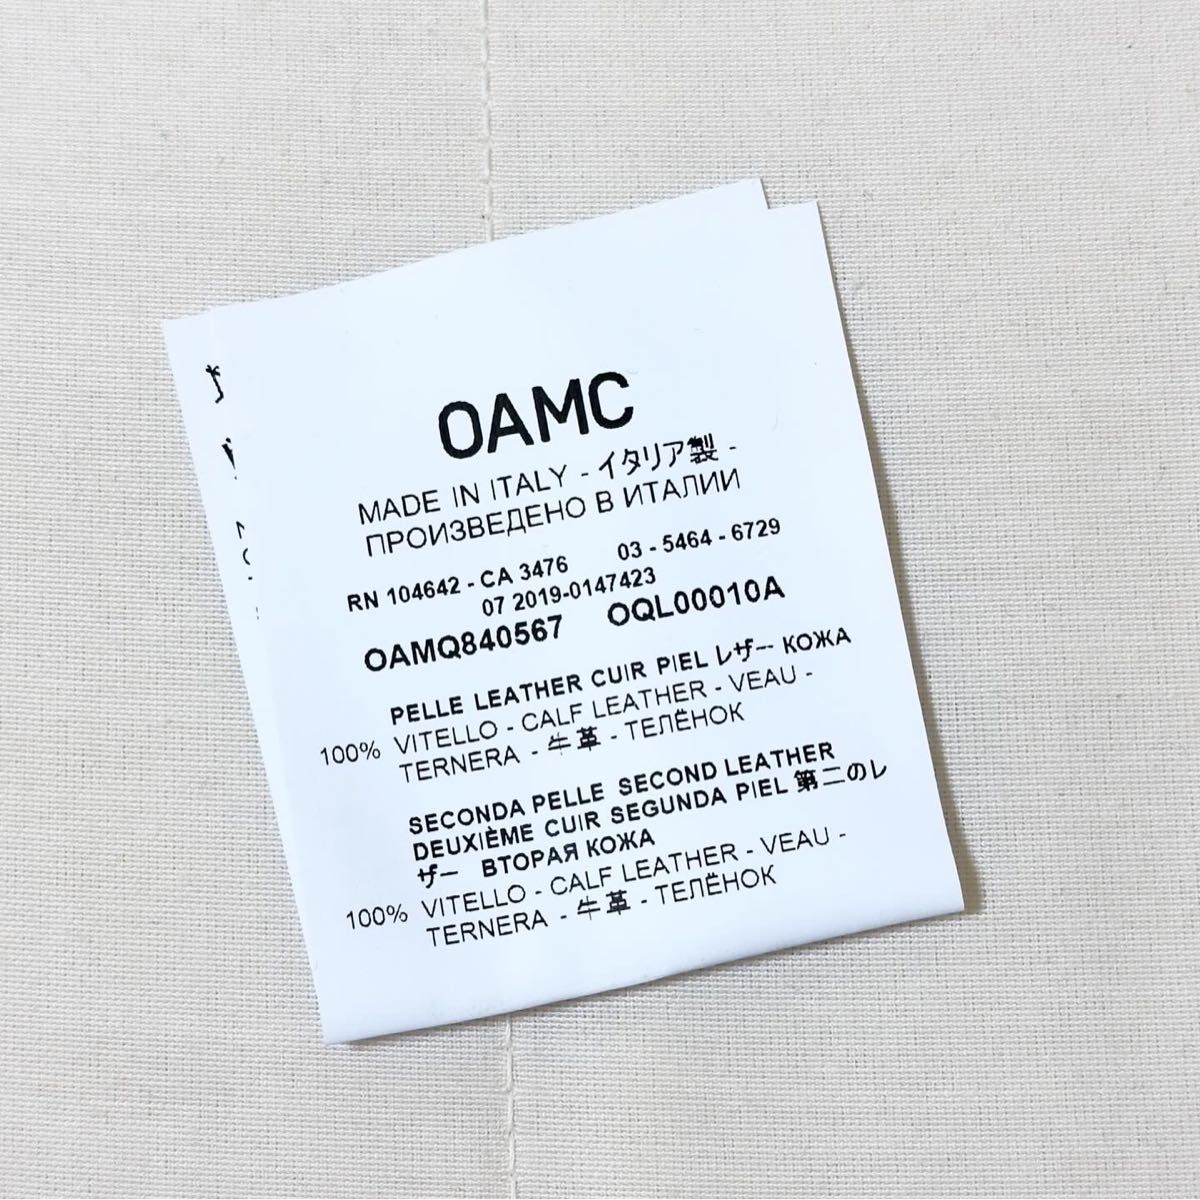 OAMC レザーネックキーホルダー ネックストラップ ホワイト